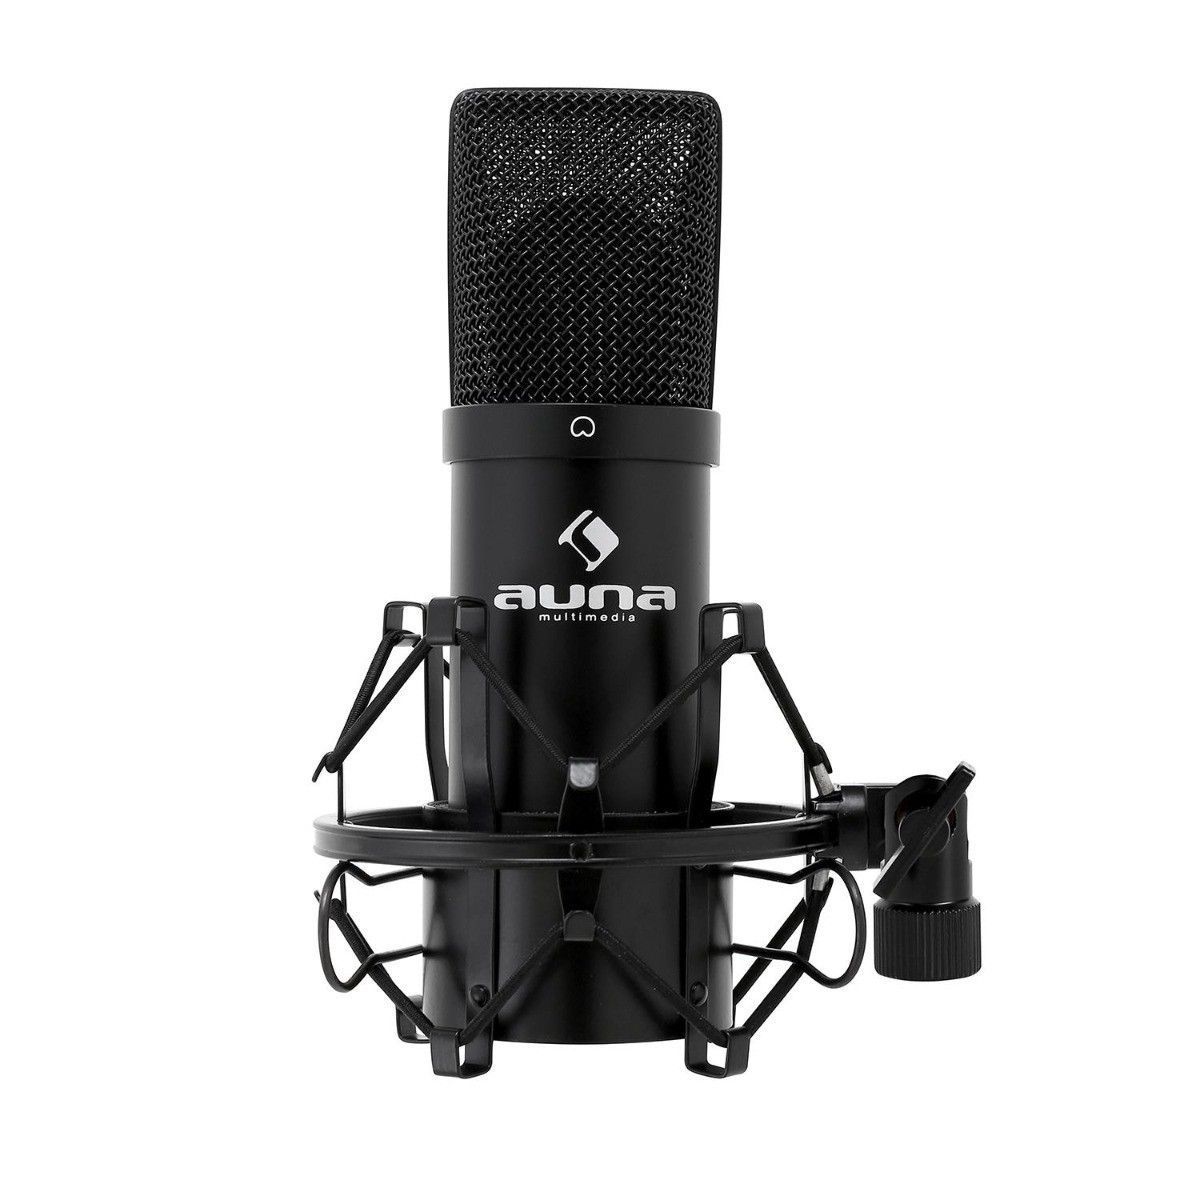 Studio microfoon - Auna MIC-900B studio condensator microfoon met USB aansluiting - Plug and play - Ideaal voor podcasts en live of studio opnames - Zwart